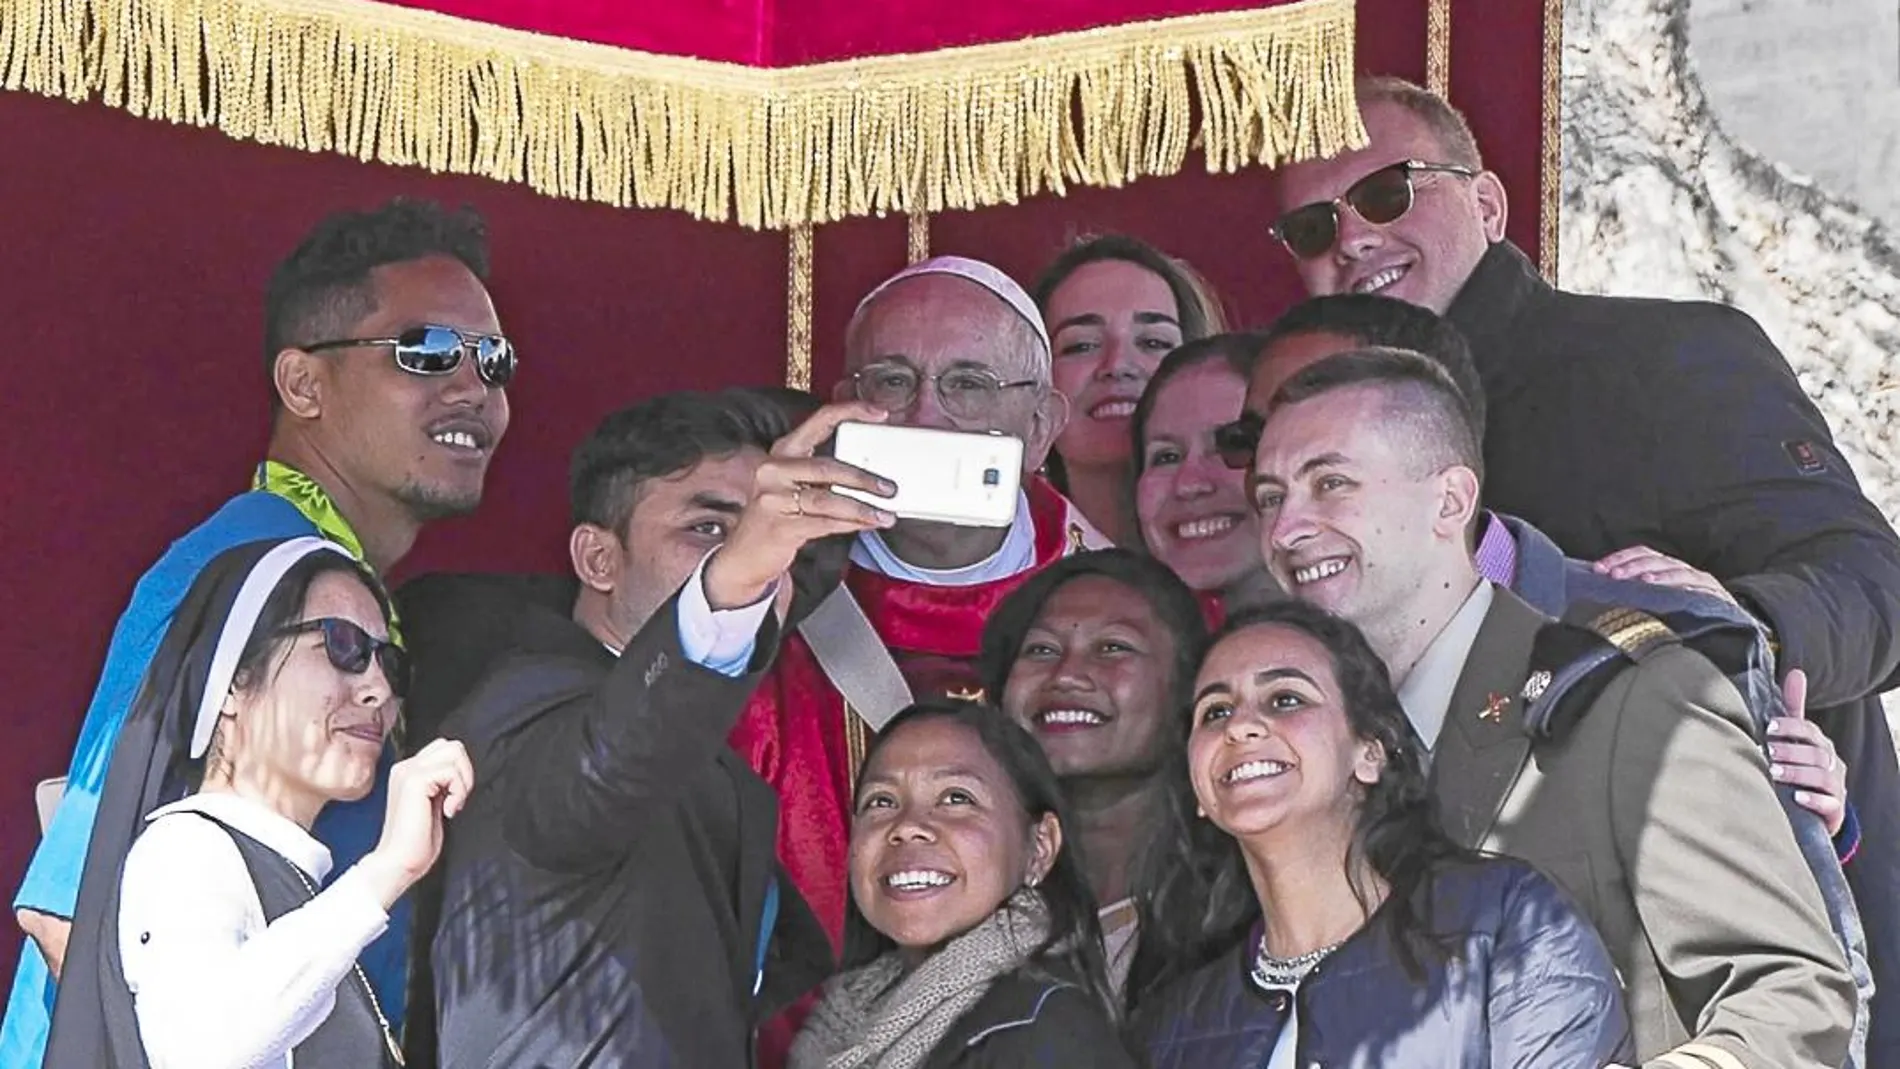 La misa del Domingo de Ramos concluyó con el Papa Francisco haciéndose «selfies» con los jóvenes